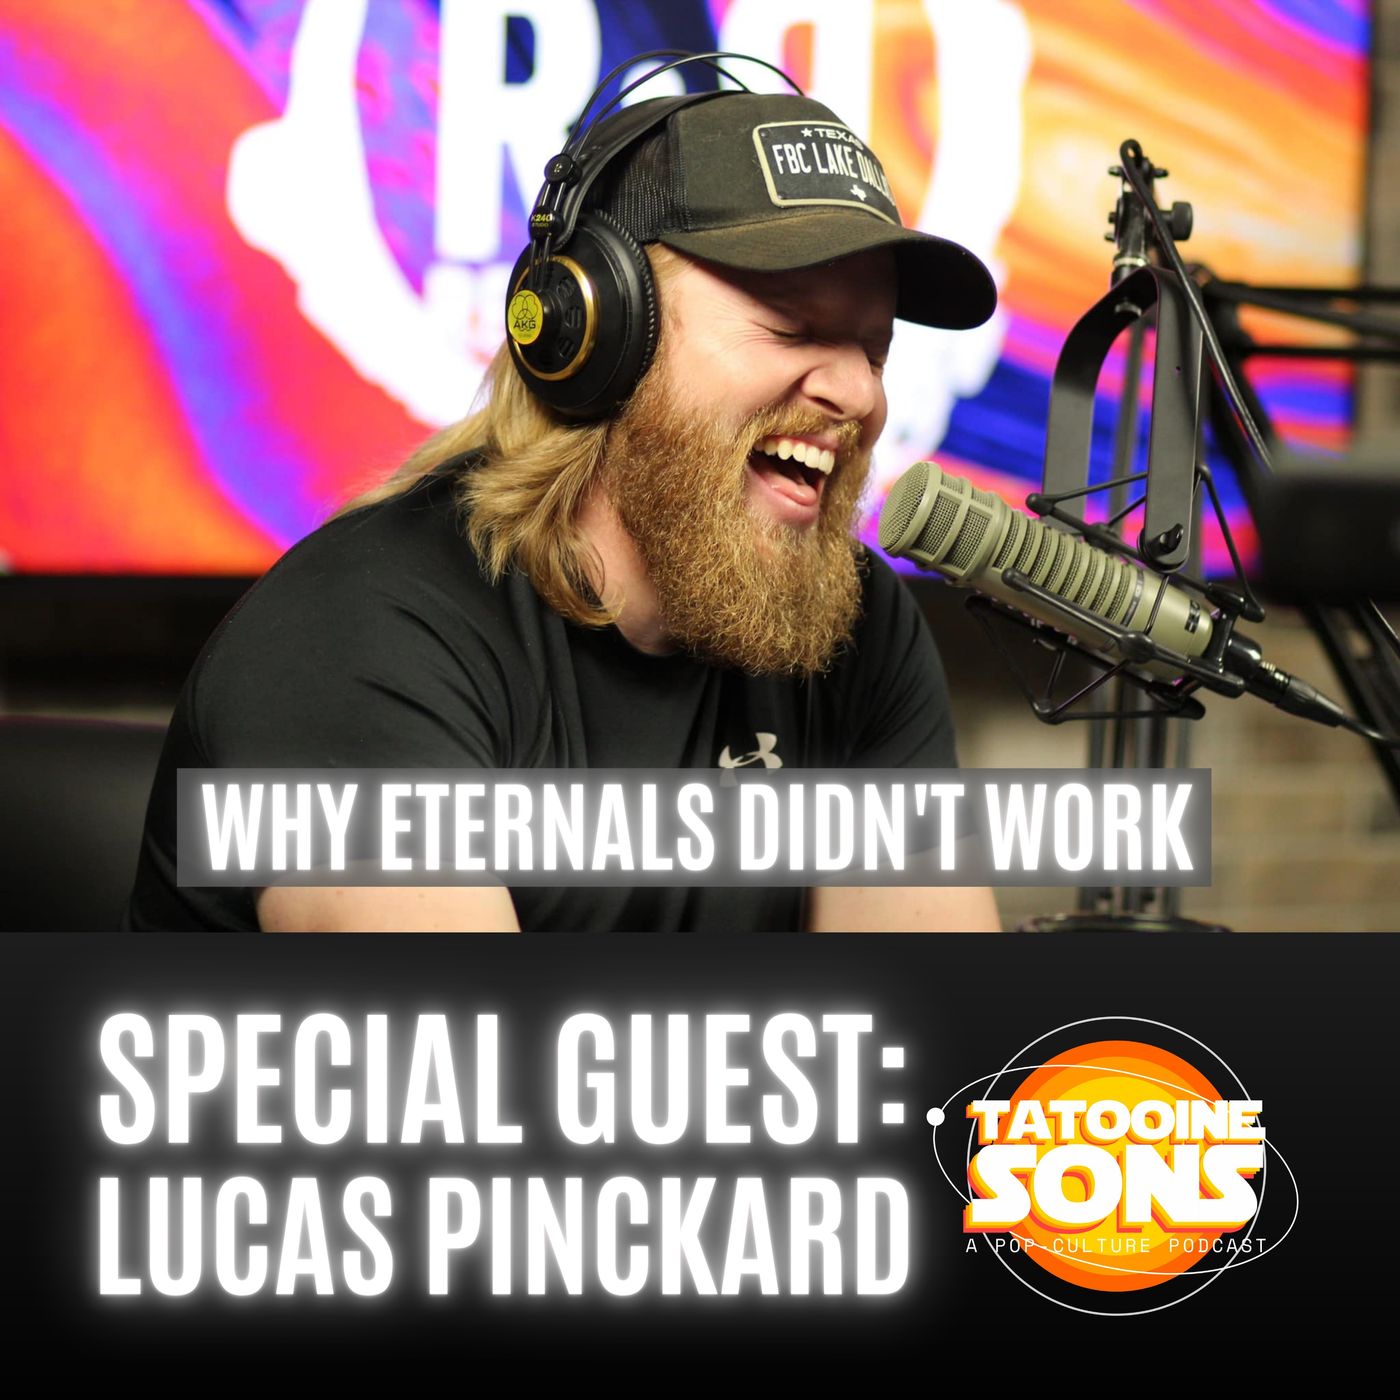 Why Eternals Doesn't Work - The Lucas Pinckard Interview